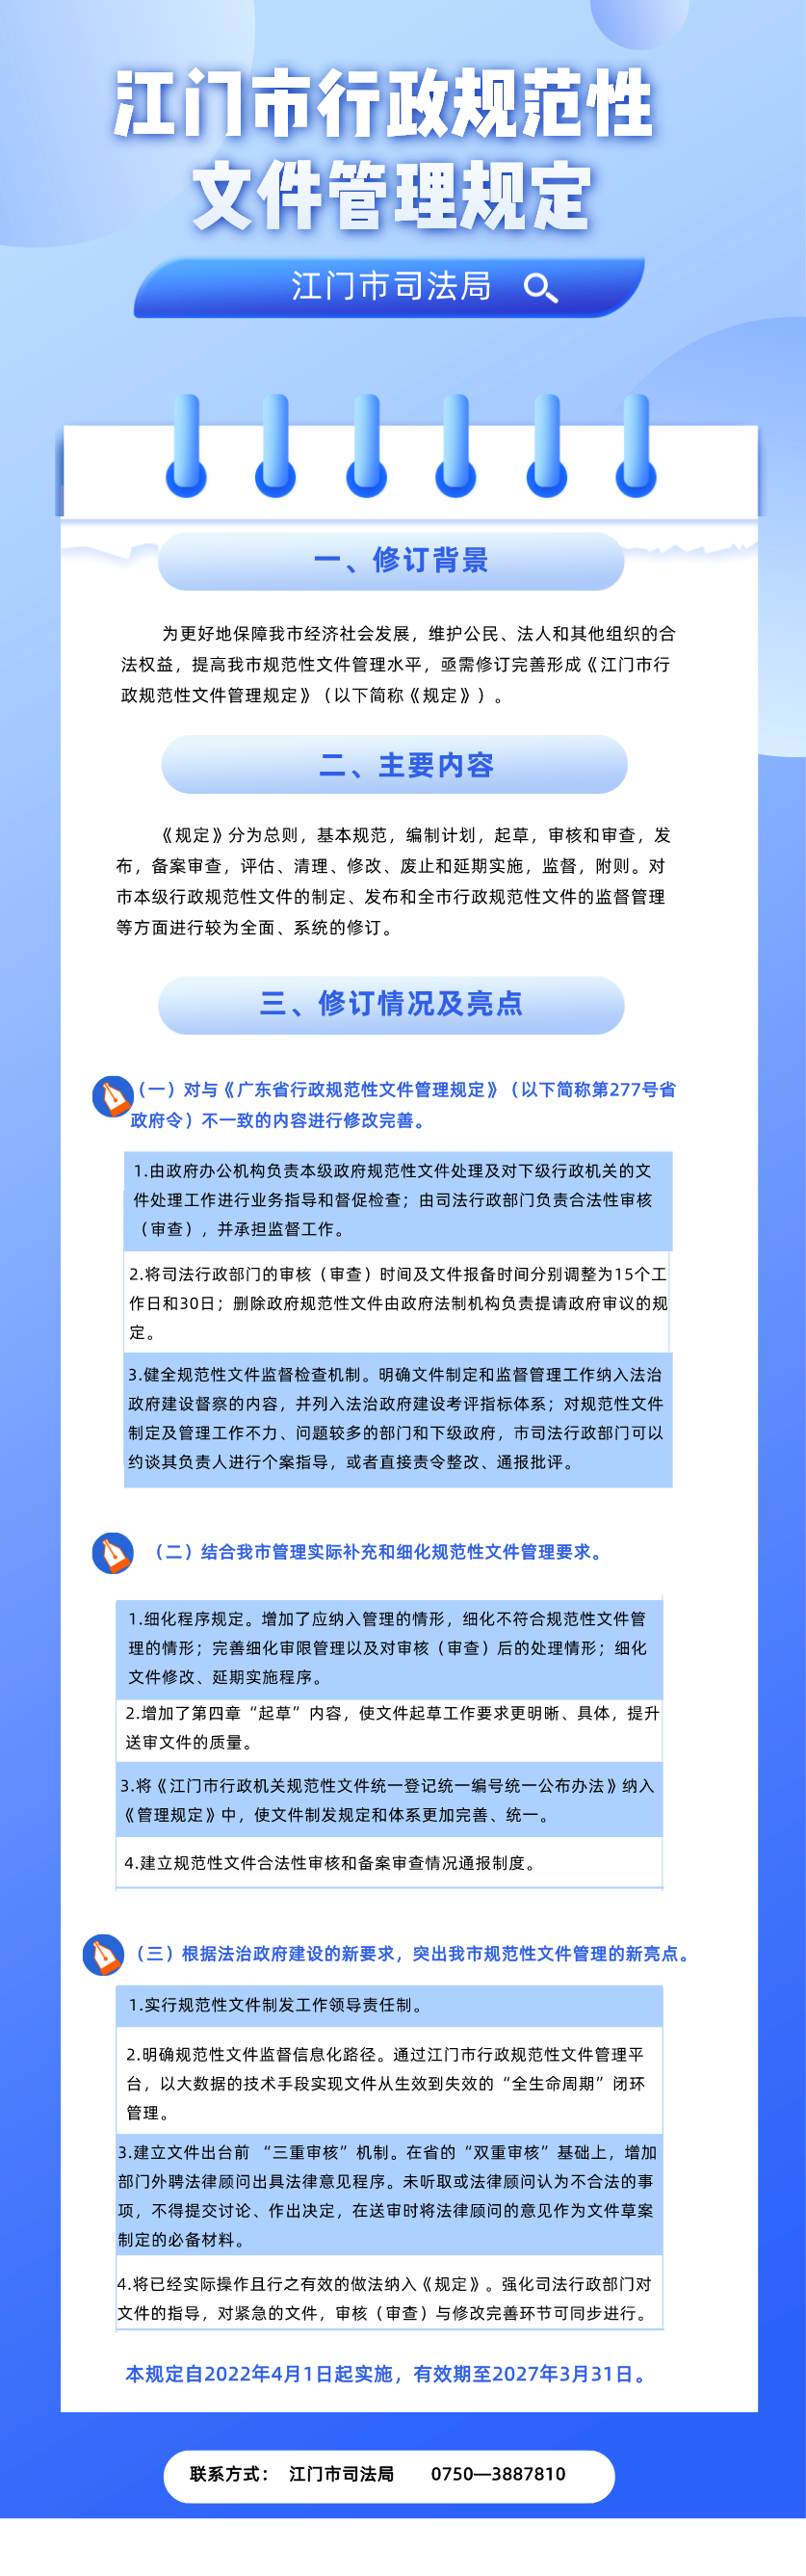 《江门市行政规范性文件管理规定》图解 (1).png